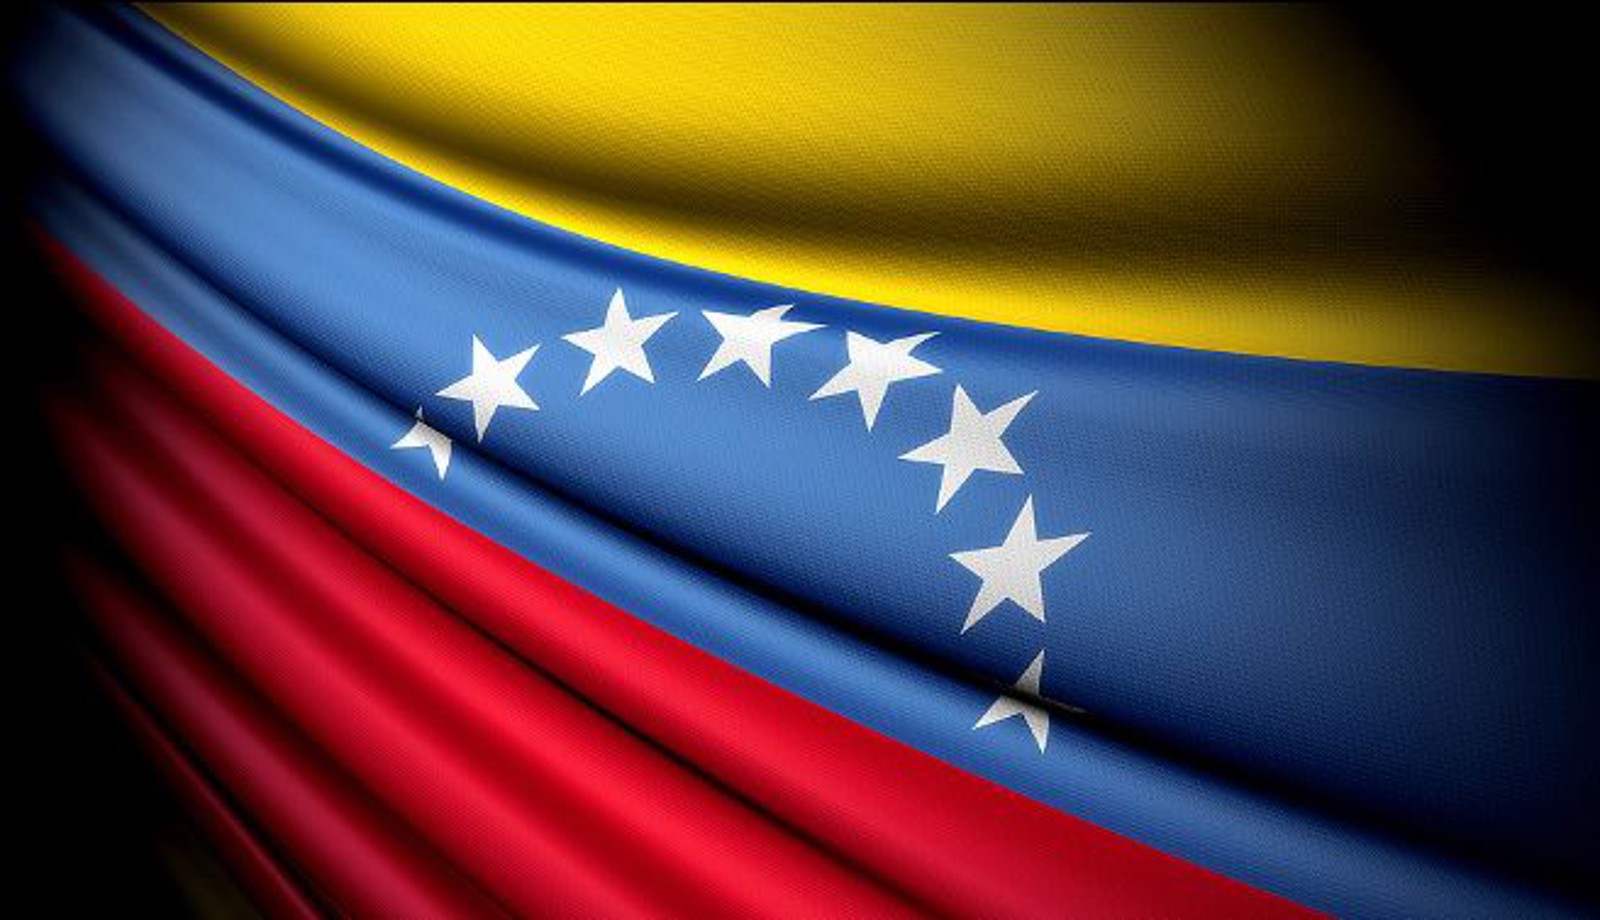 Banderas venezuela y colombia